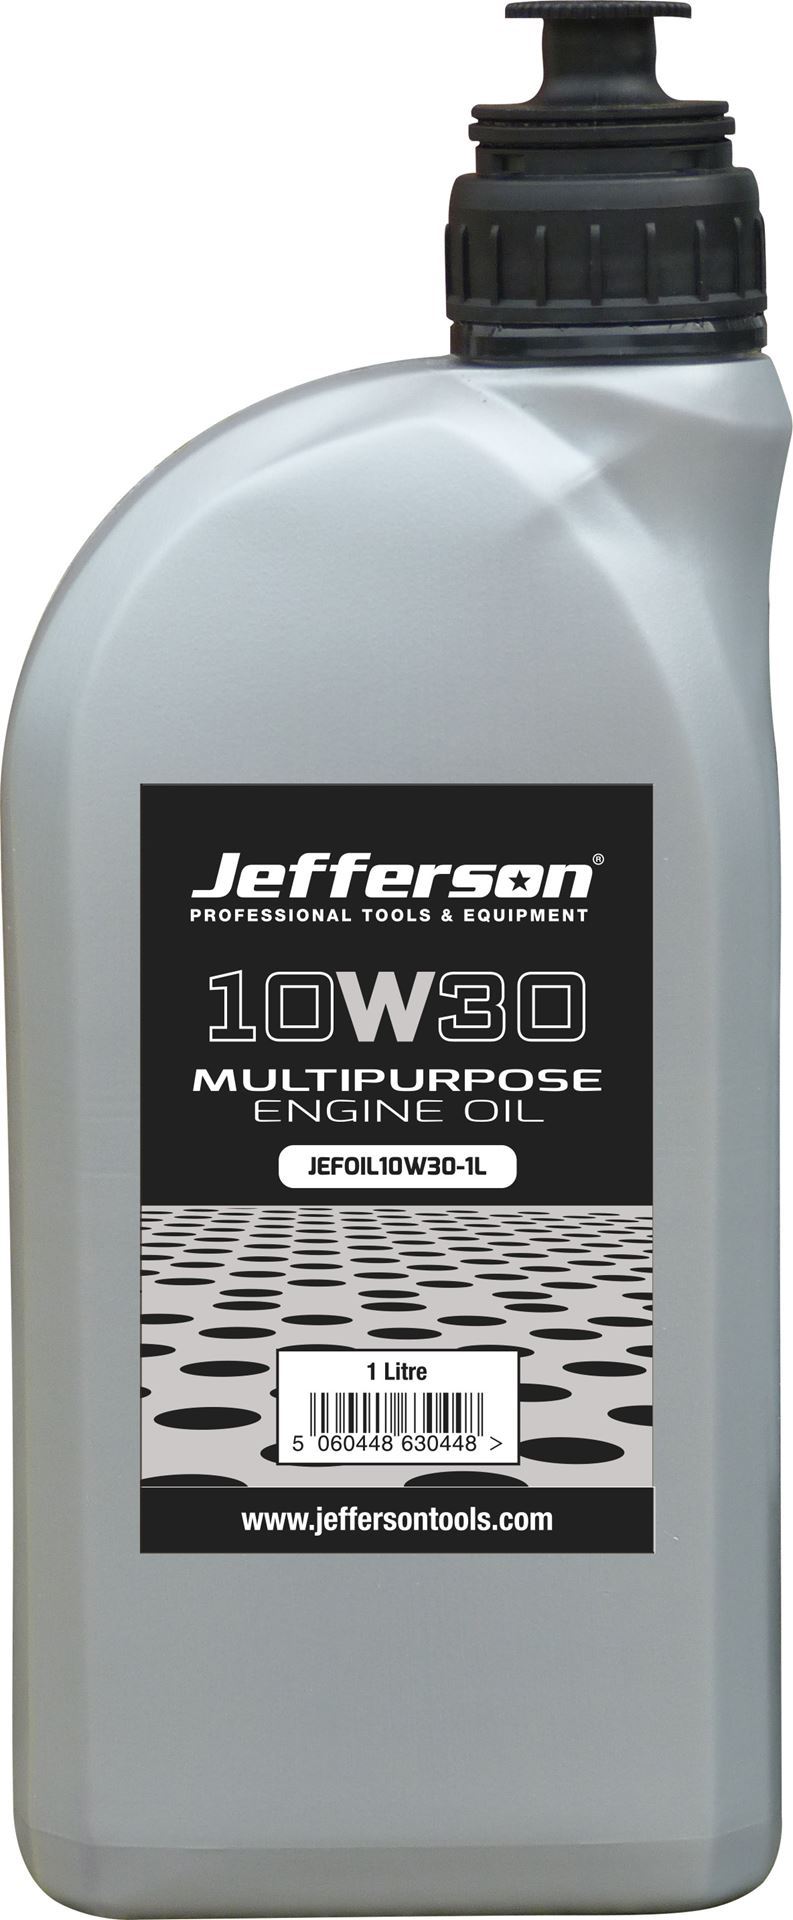 10W30 Multipurpose Engine Oil